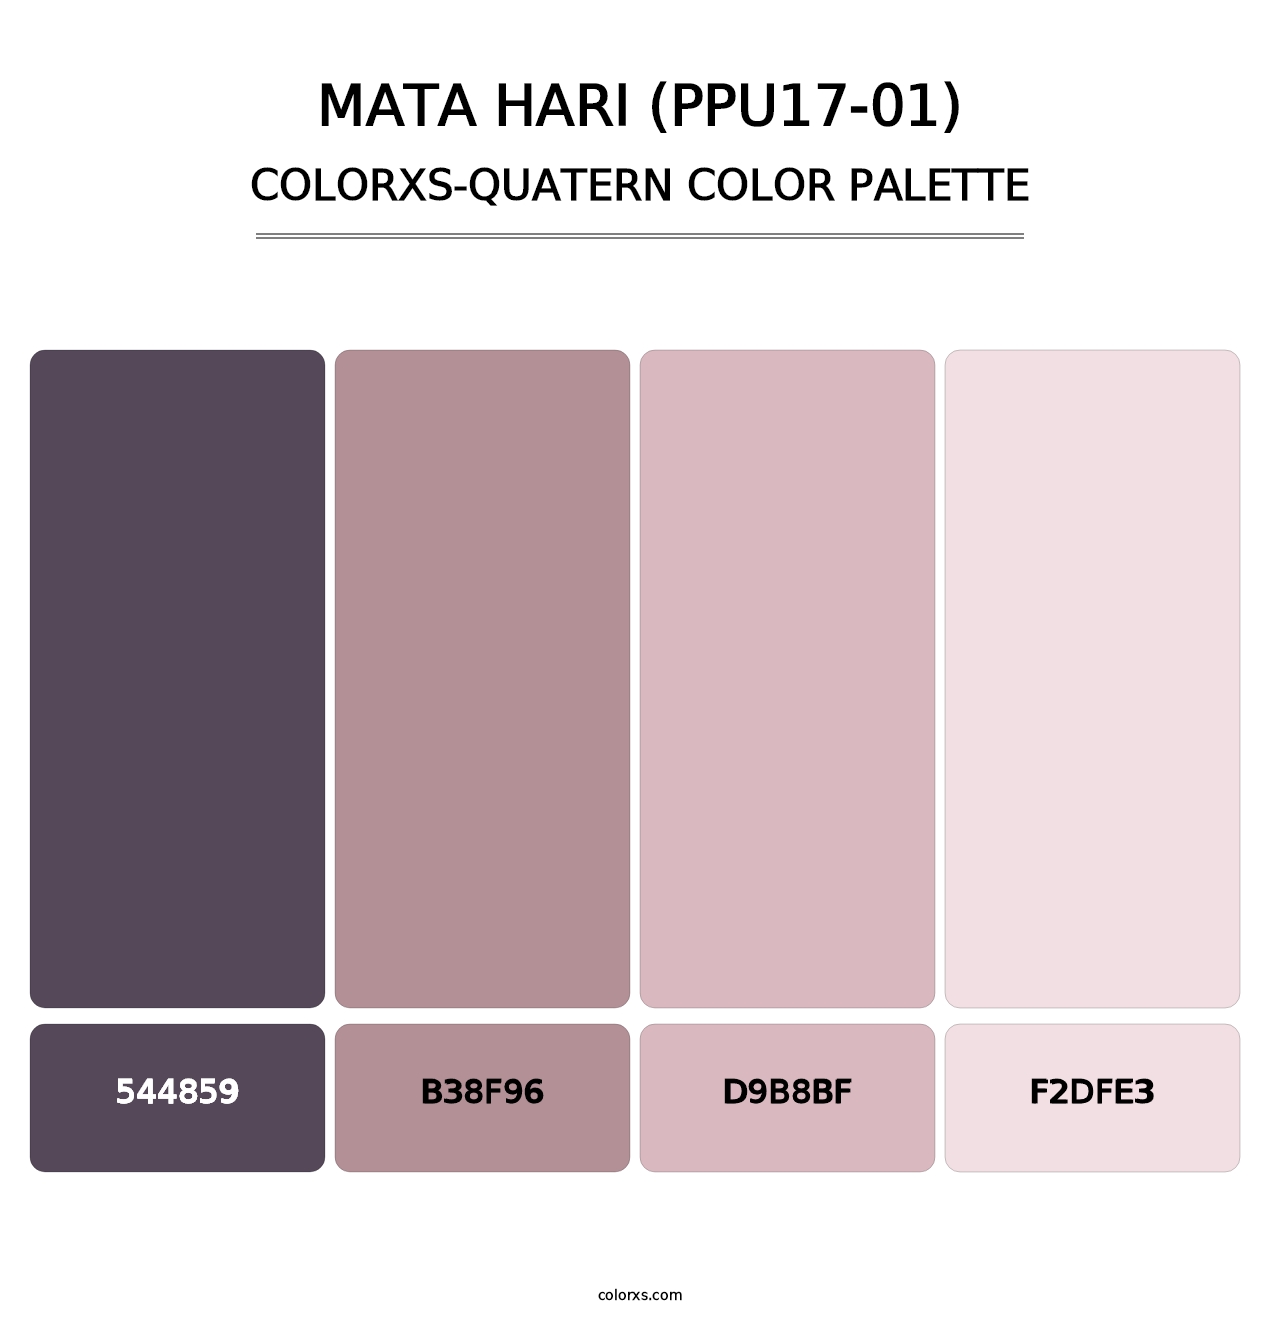 Mata Hari (PPU17-01) - Colorxs Quatern Palette